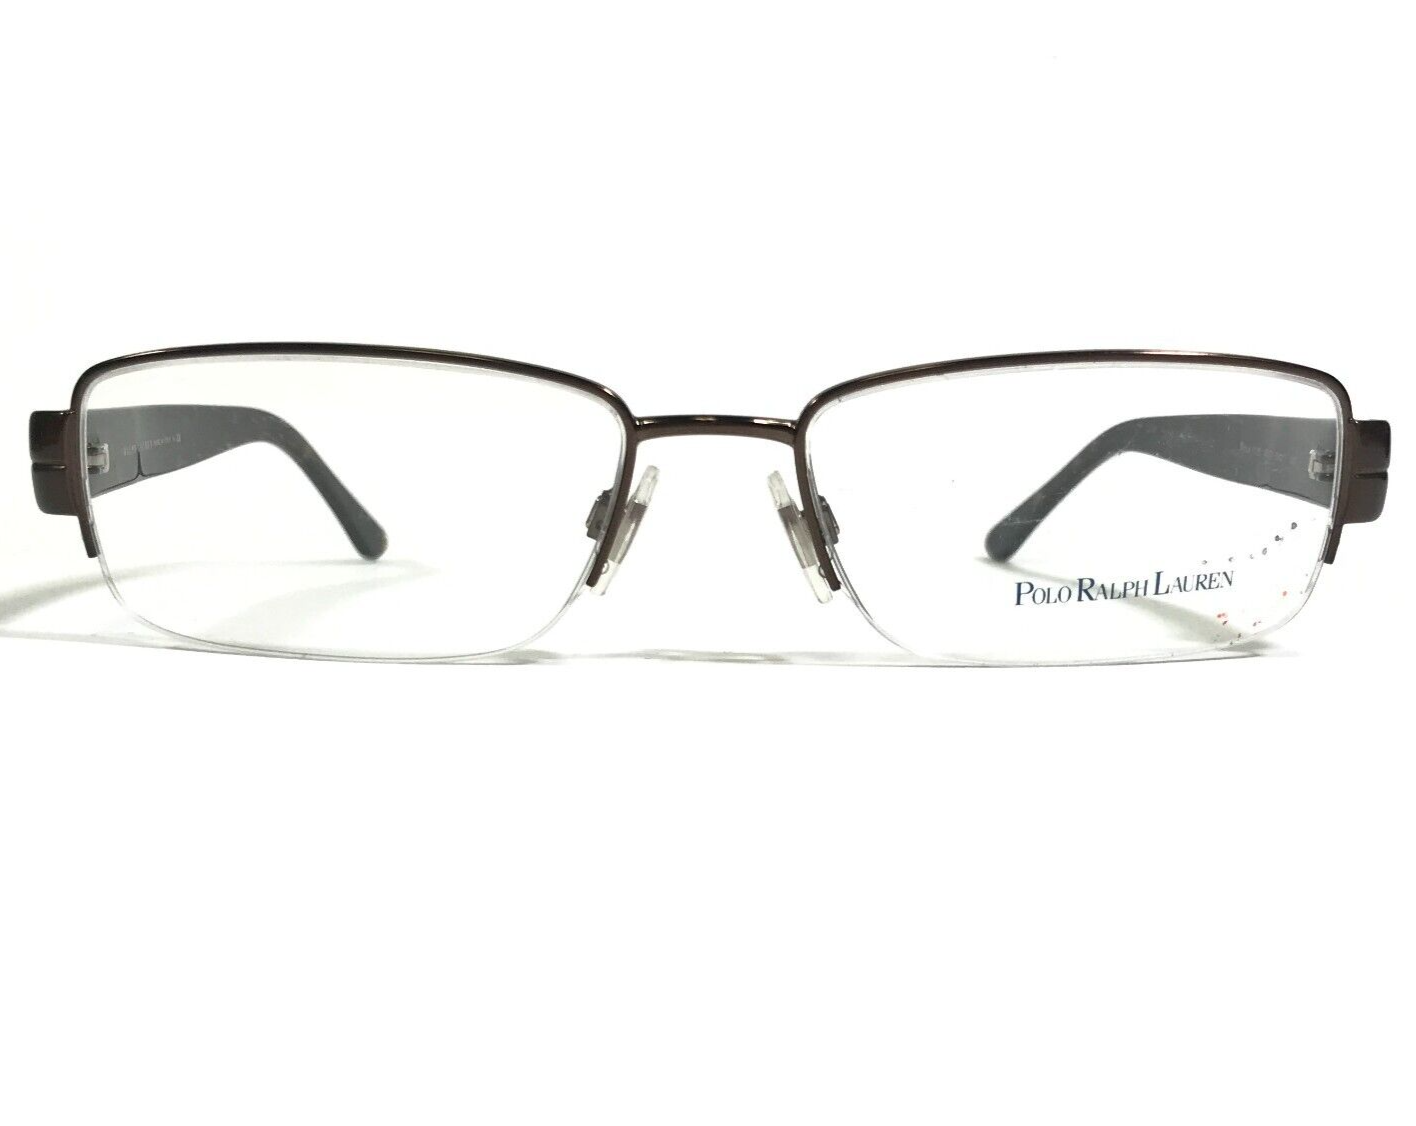 Primary image for Polo Ralph Lauren Eyeglasses Frames 1115 9013 Brown Tortoise Rectangle 54-17-140